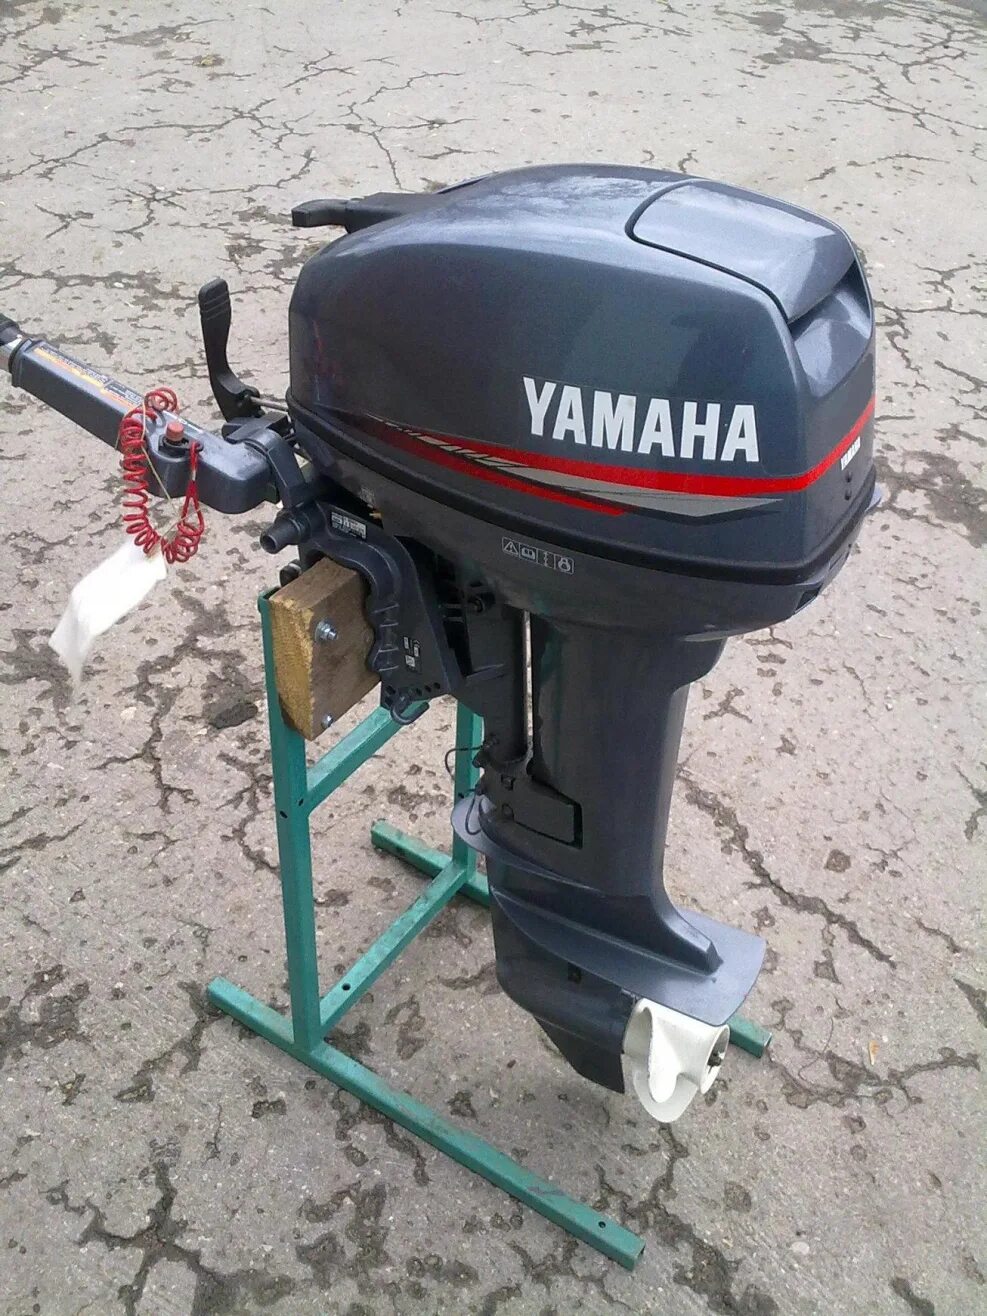 Купить мотор лодочный б ямаха. Мотор Лодочный Yamaha 15. Yamaha a15. Лодочный мотор Ямаха 15 2х тактный. Лодочный мотор Ямаха 8 л.с.